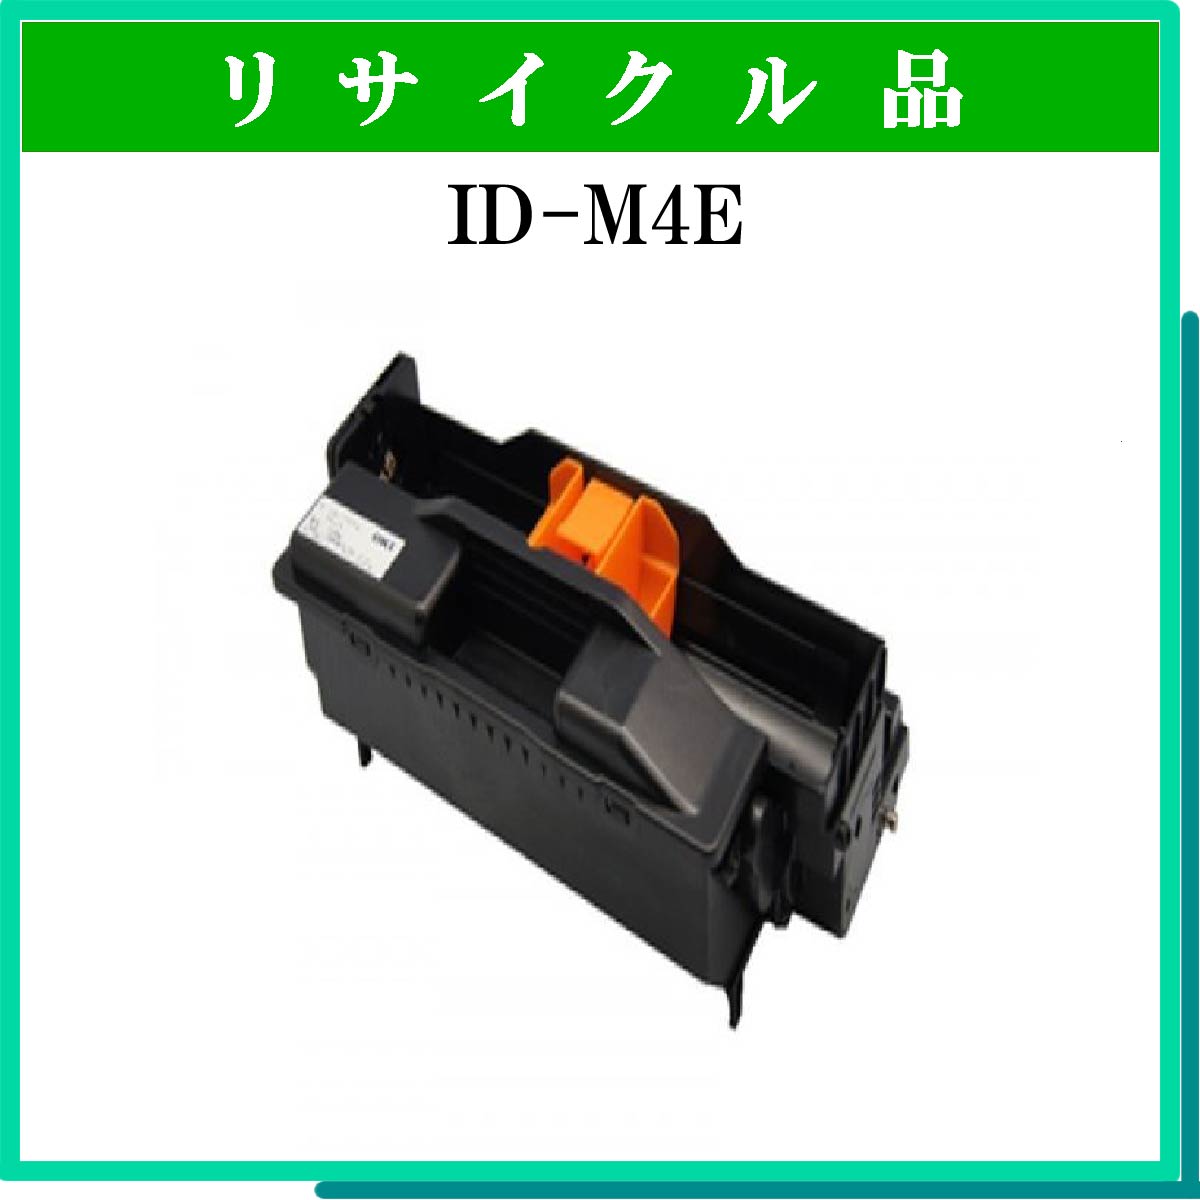 ID-M4E